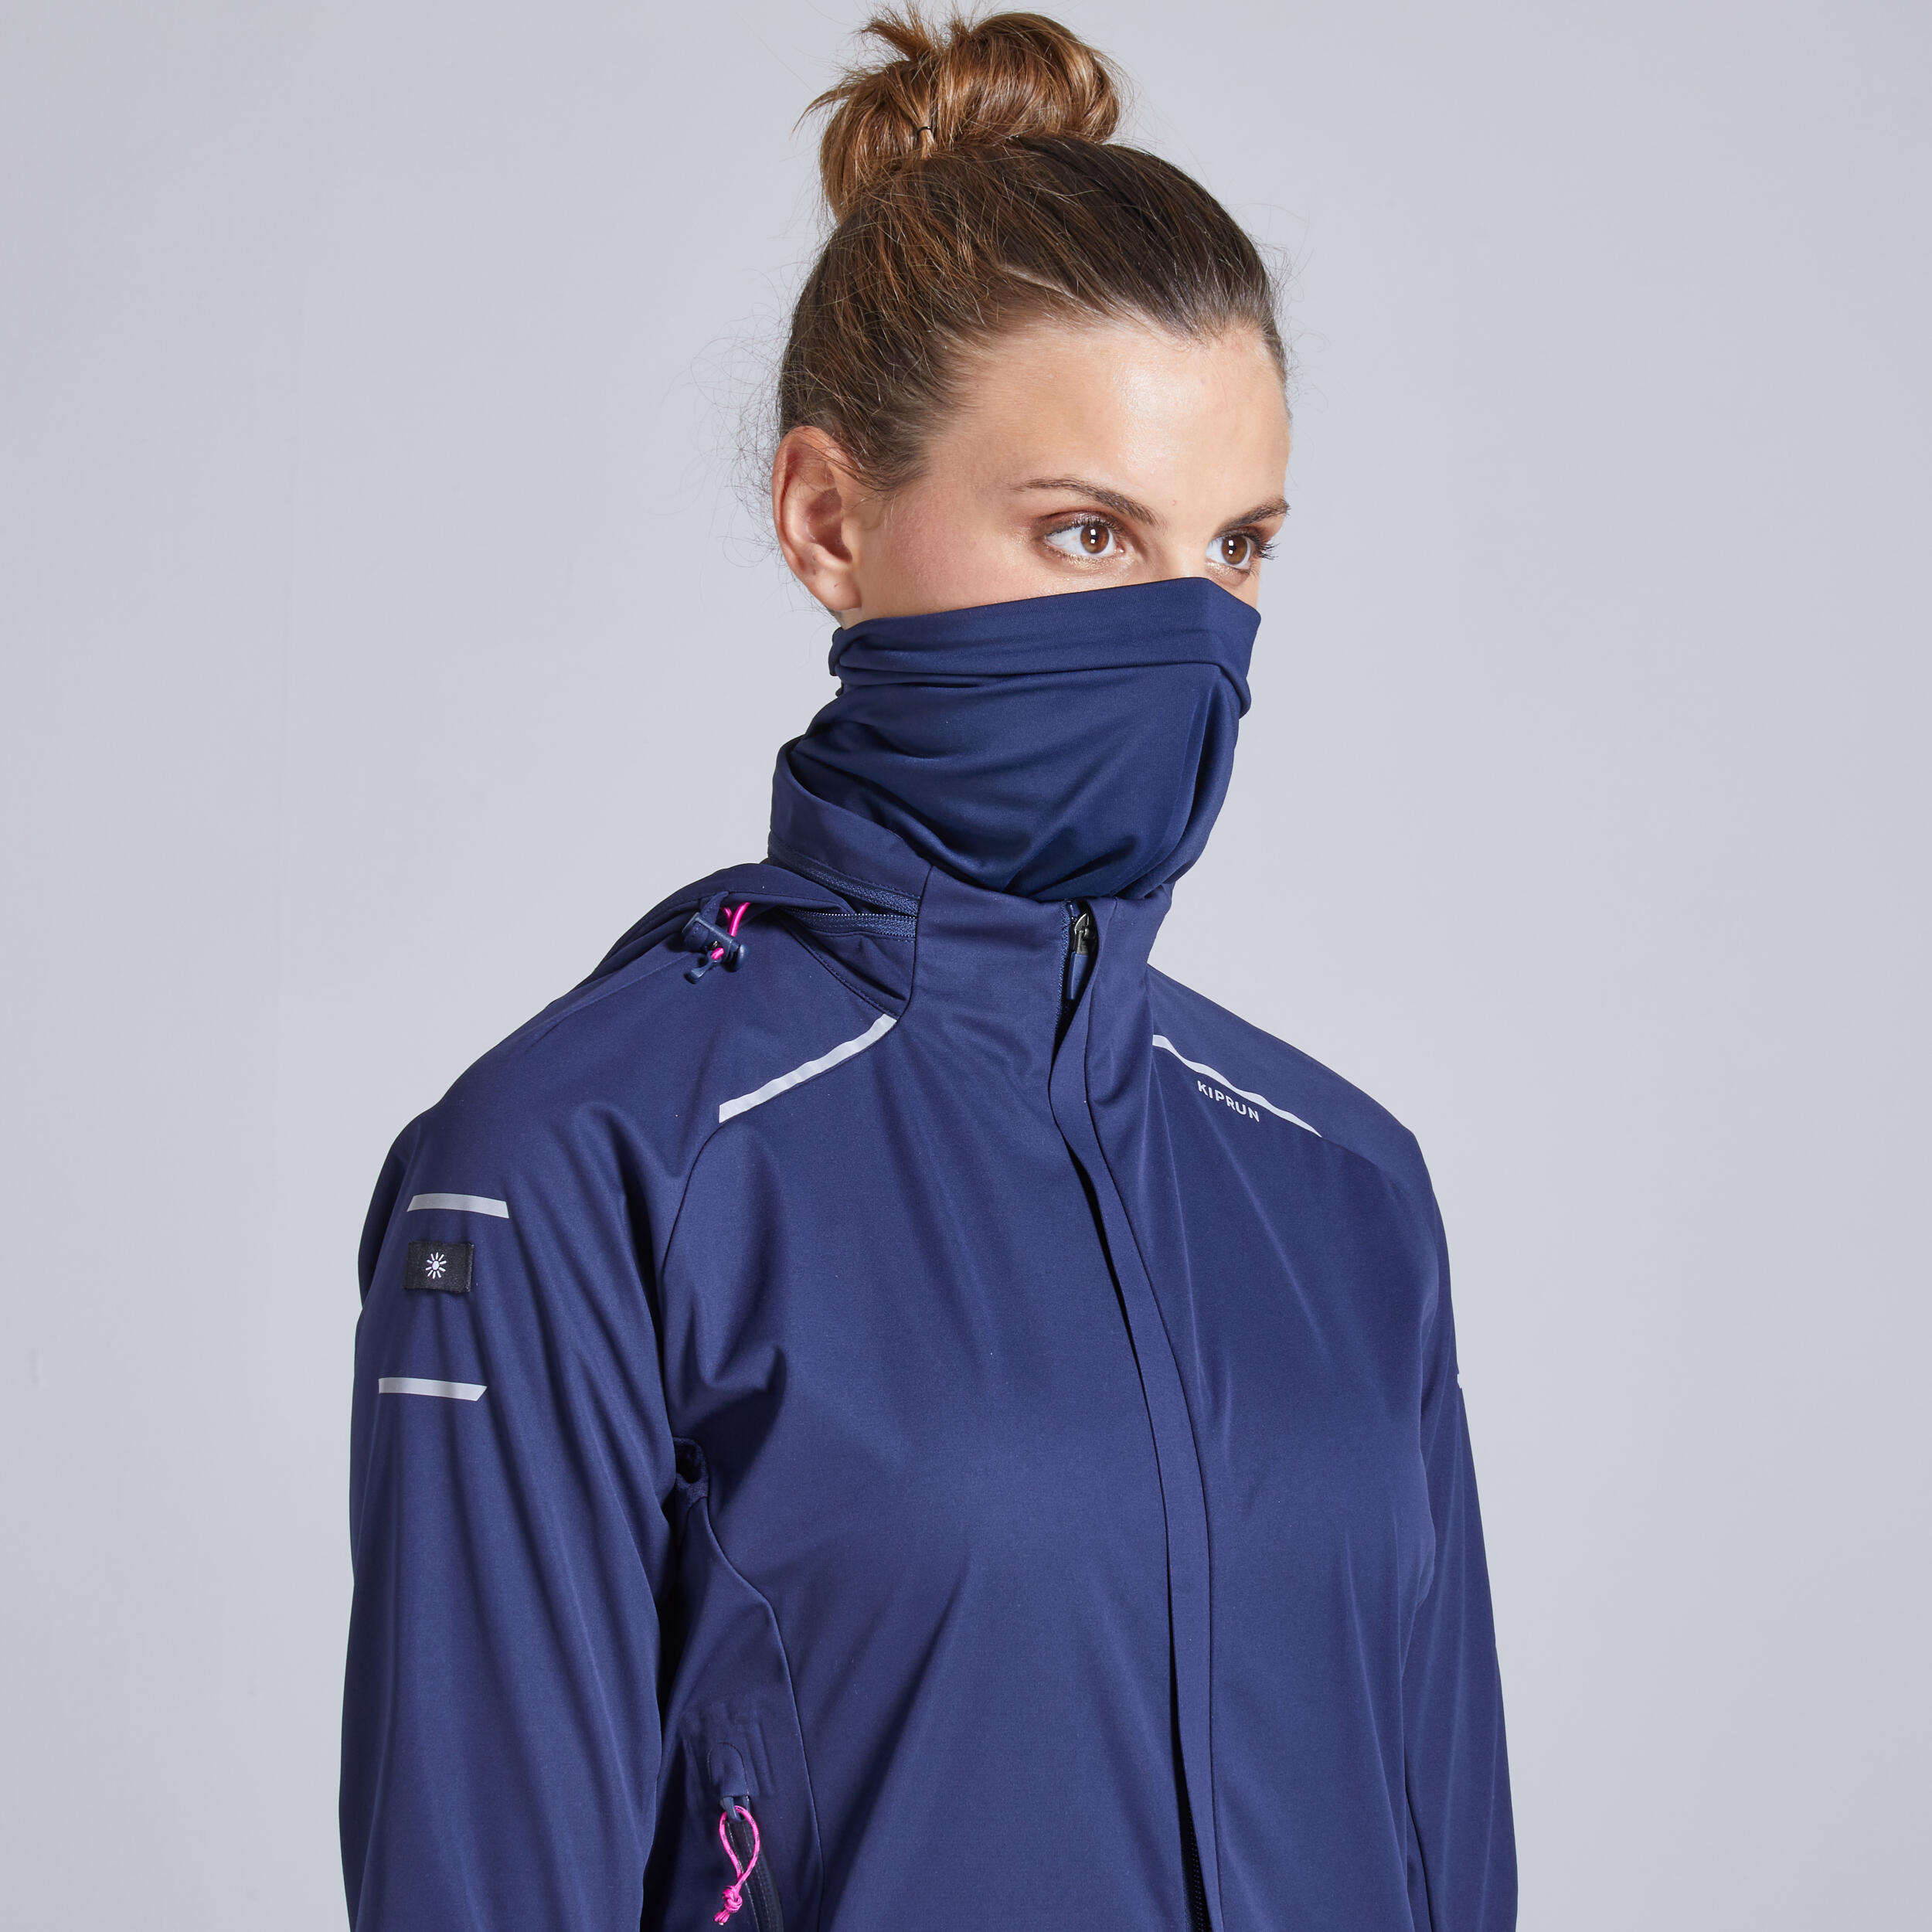 Kiprun Warm Regul Women's Winter Running Windproof Water Repellent Jacket - navy 8/12